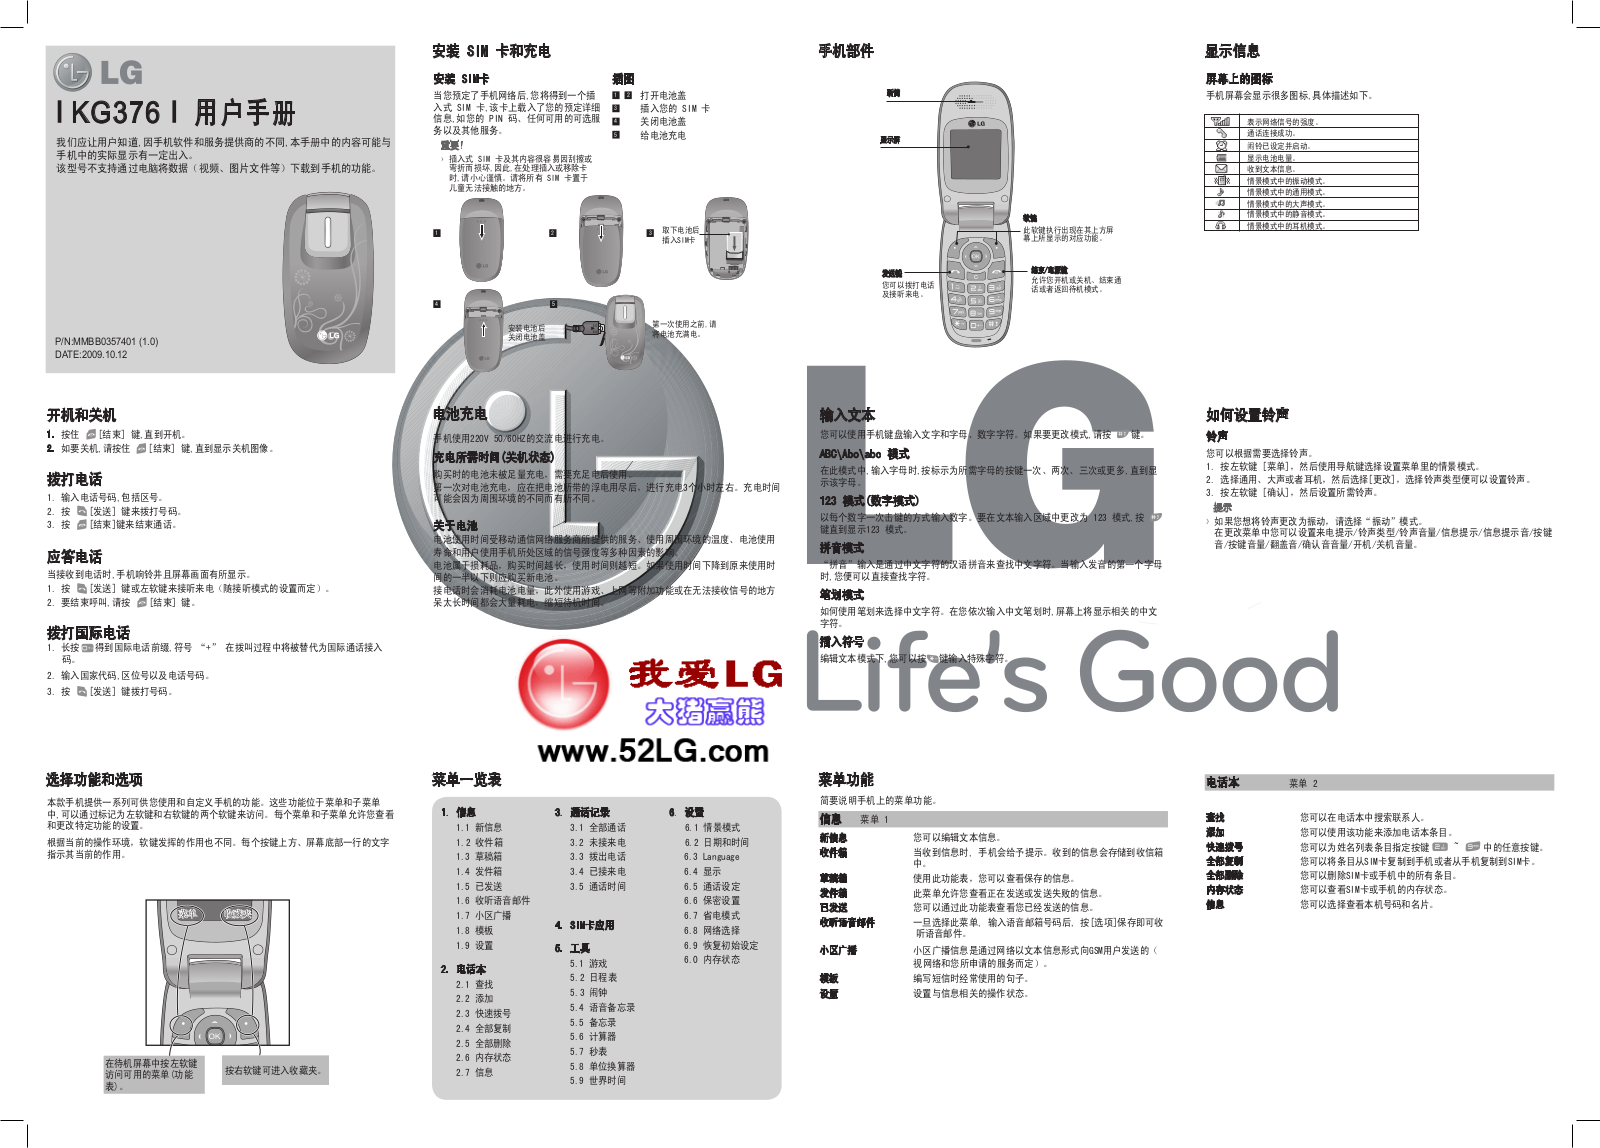 LG KG378 User Guide